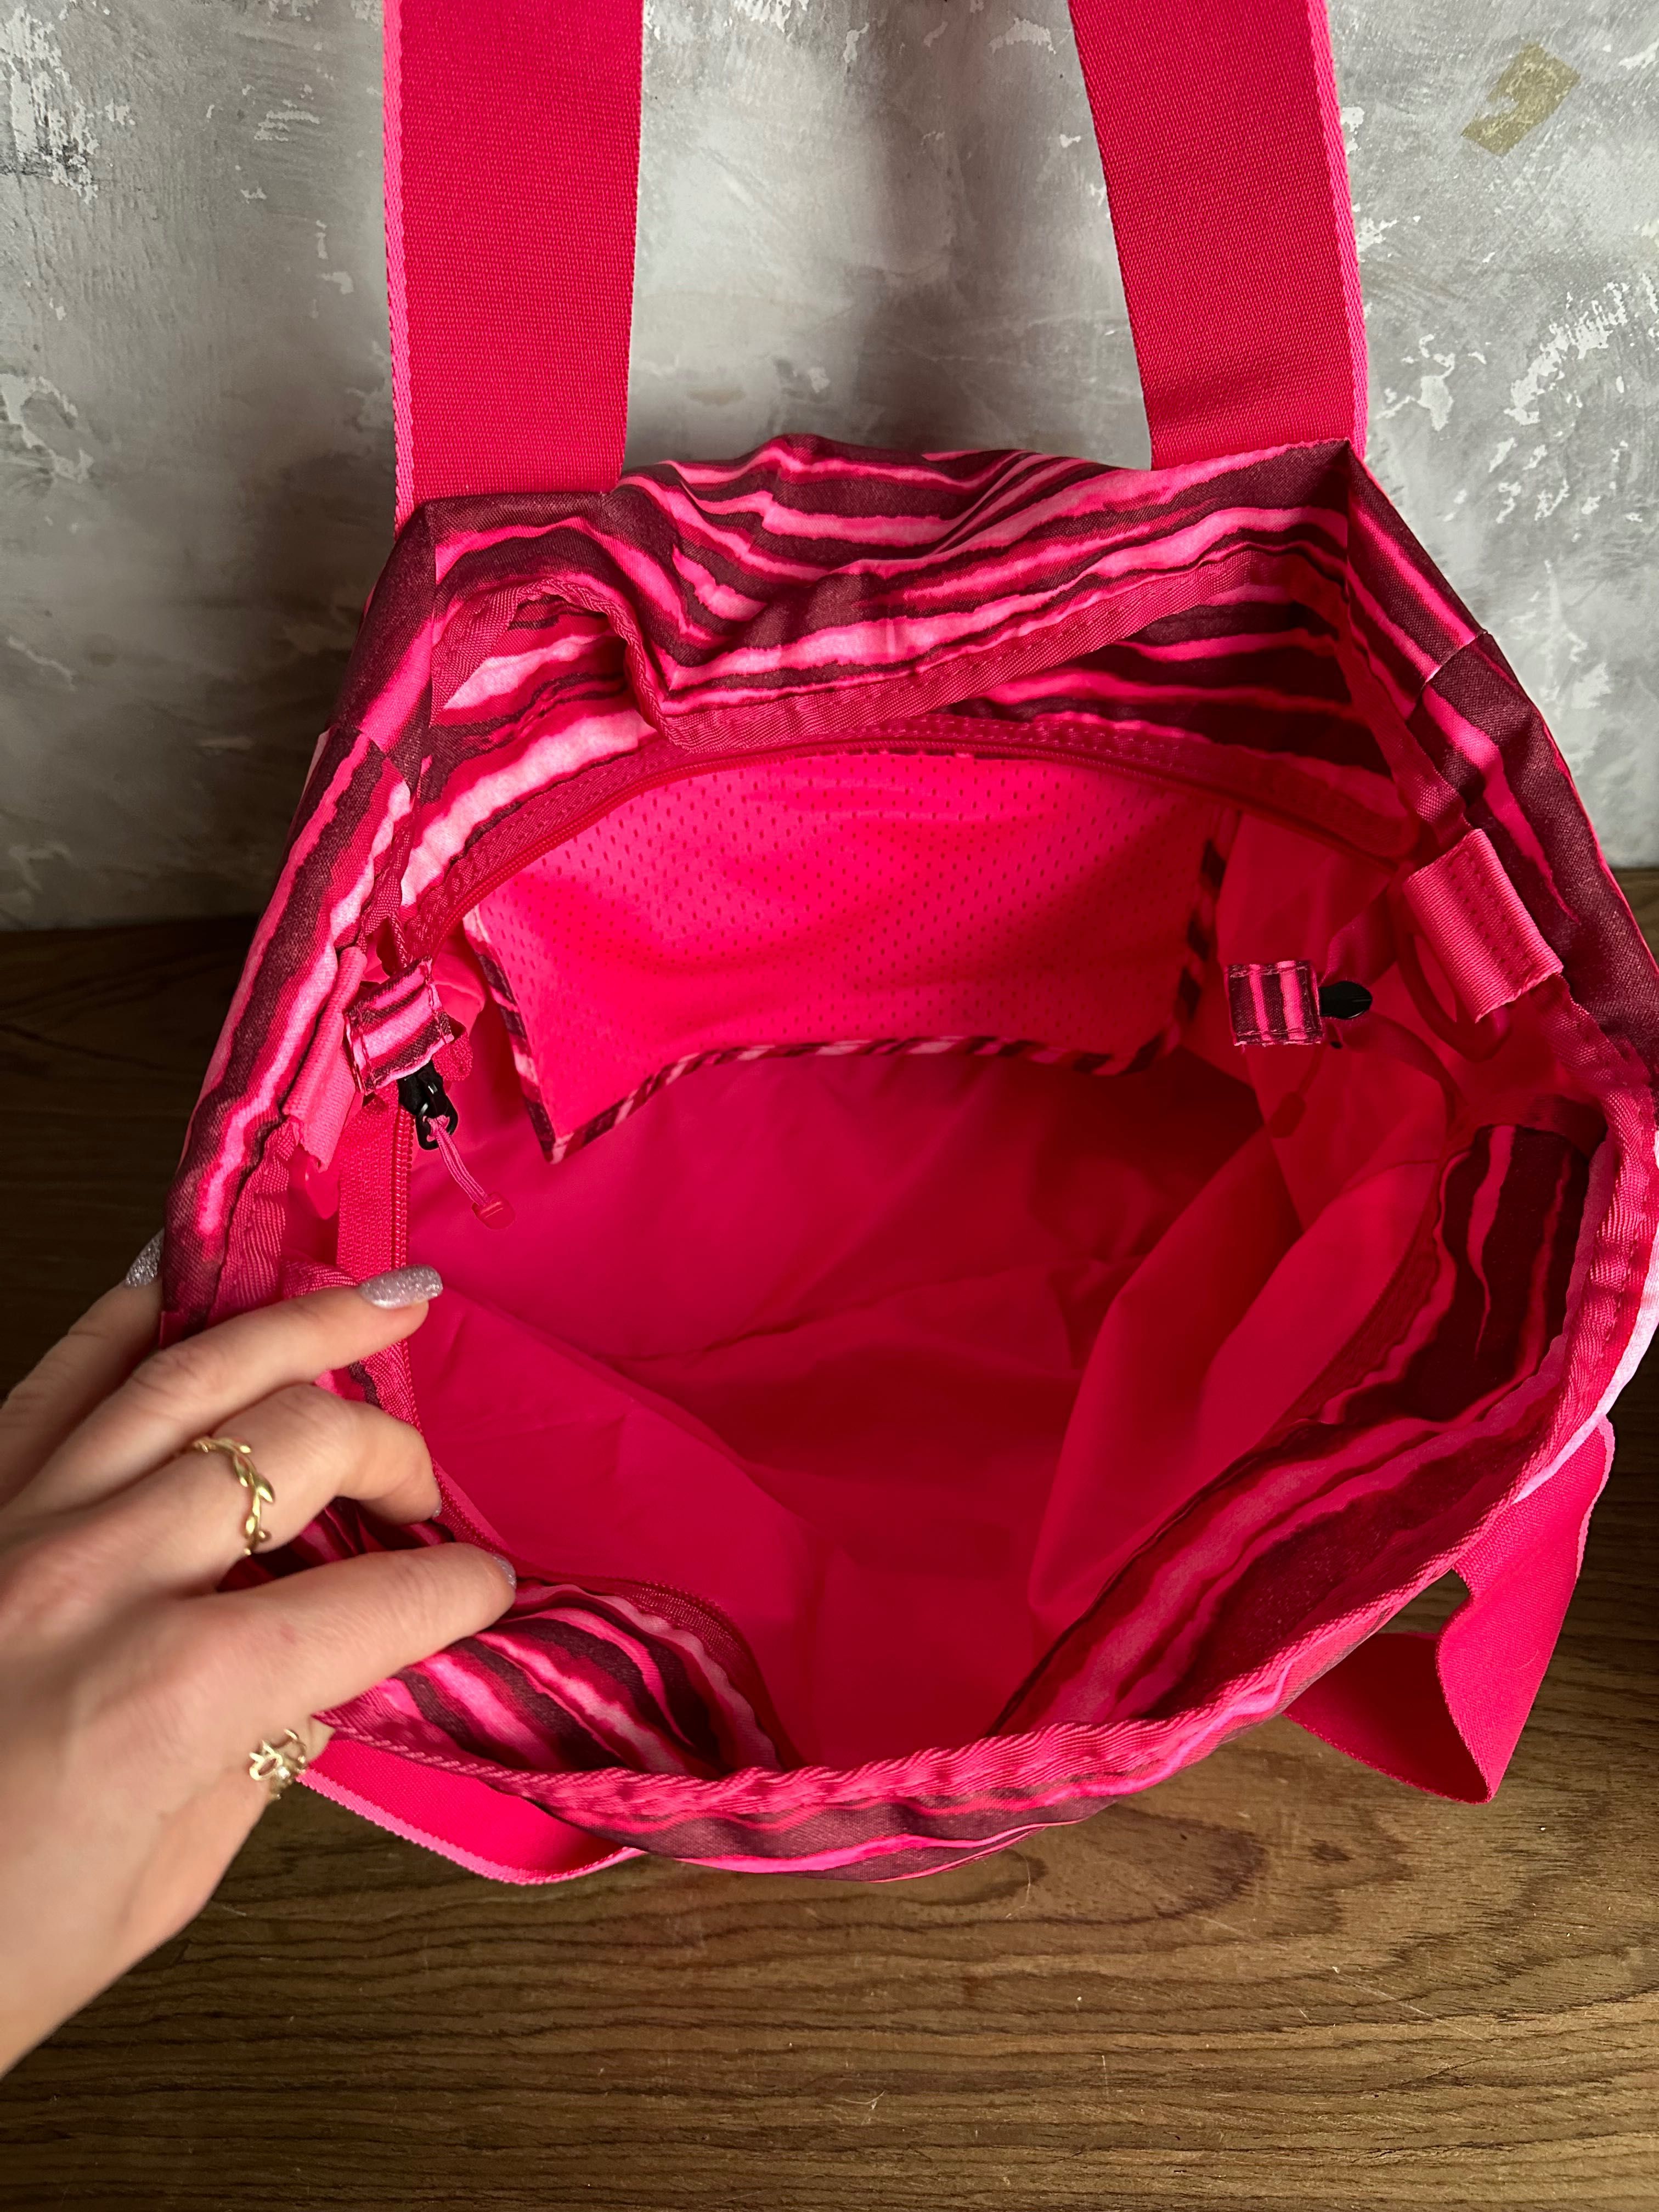 Nike спортивная сумка розовая дорожная женская шоппер оригинал найк